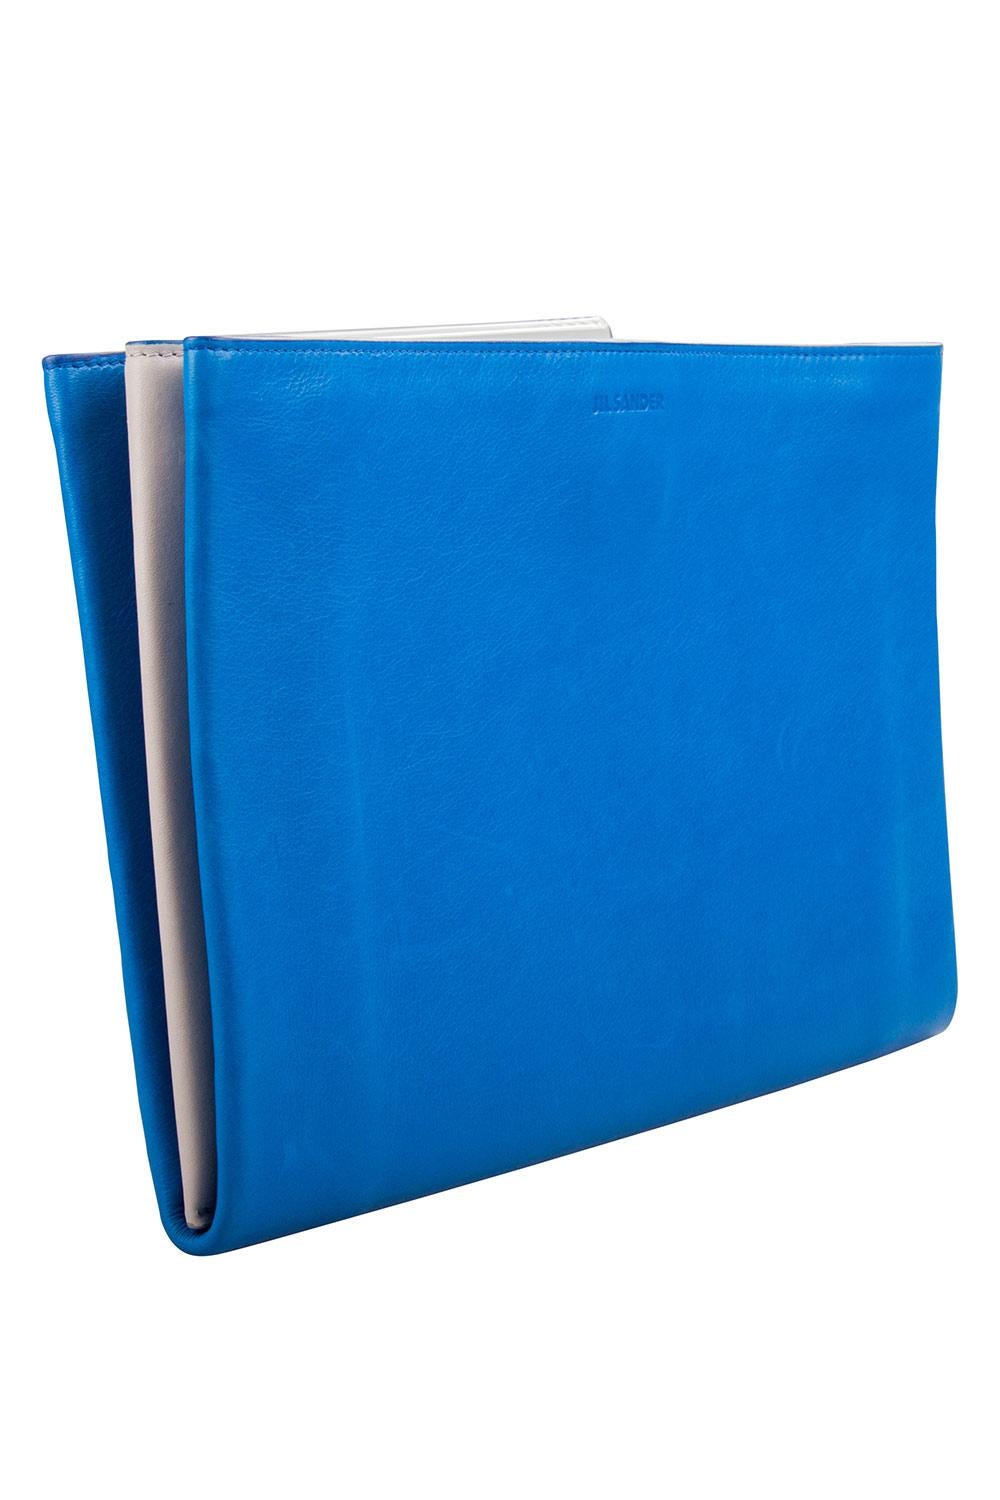 Portez cette pochette bleue et blanche de la maison Jil Sander. L'accessoire en cuir est doté d'une fermeture supérieure à boutons-pression et d'un intérieur approprié divisé en compartiments pour votre confort. Arborant le logo de la marque sur le